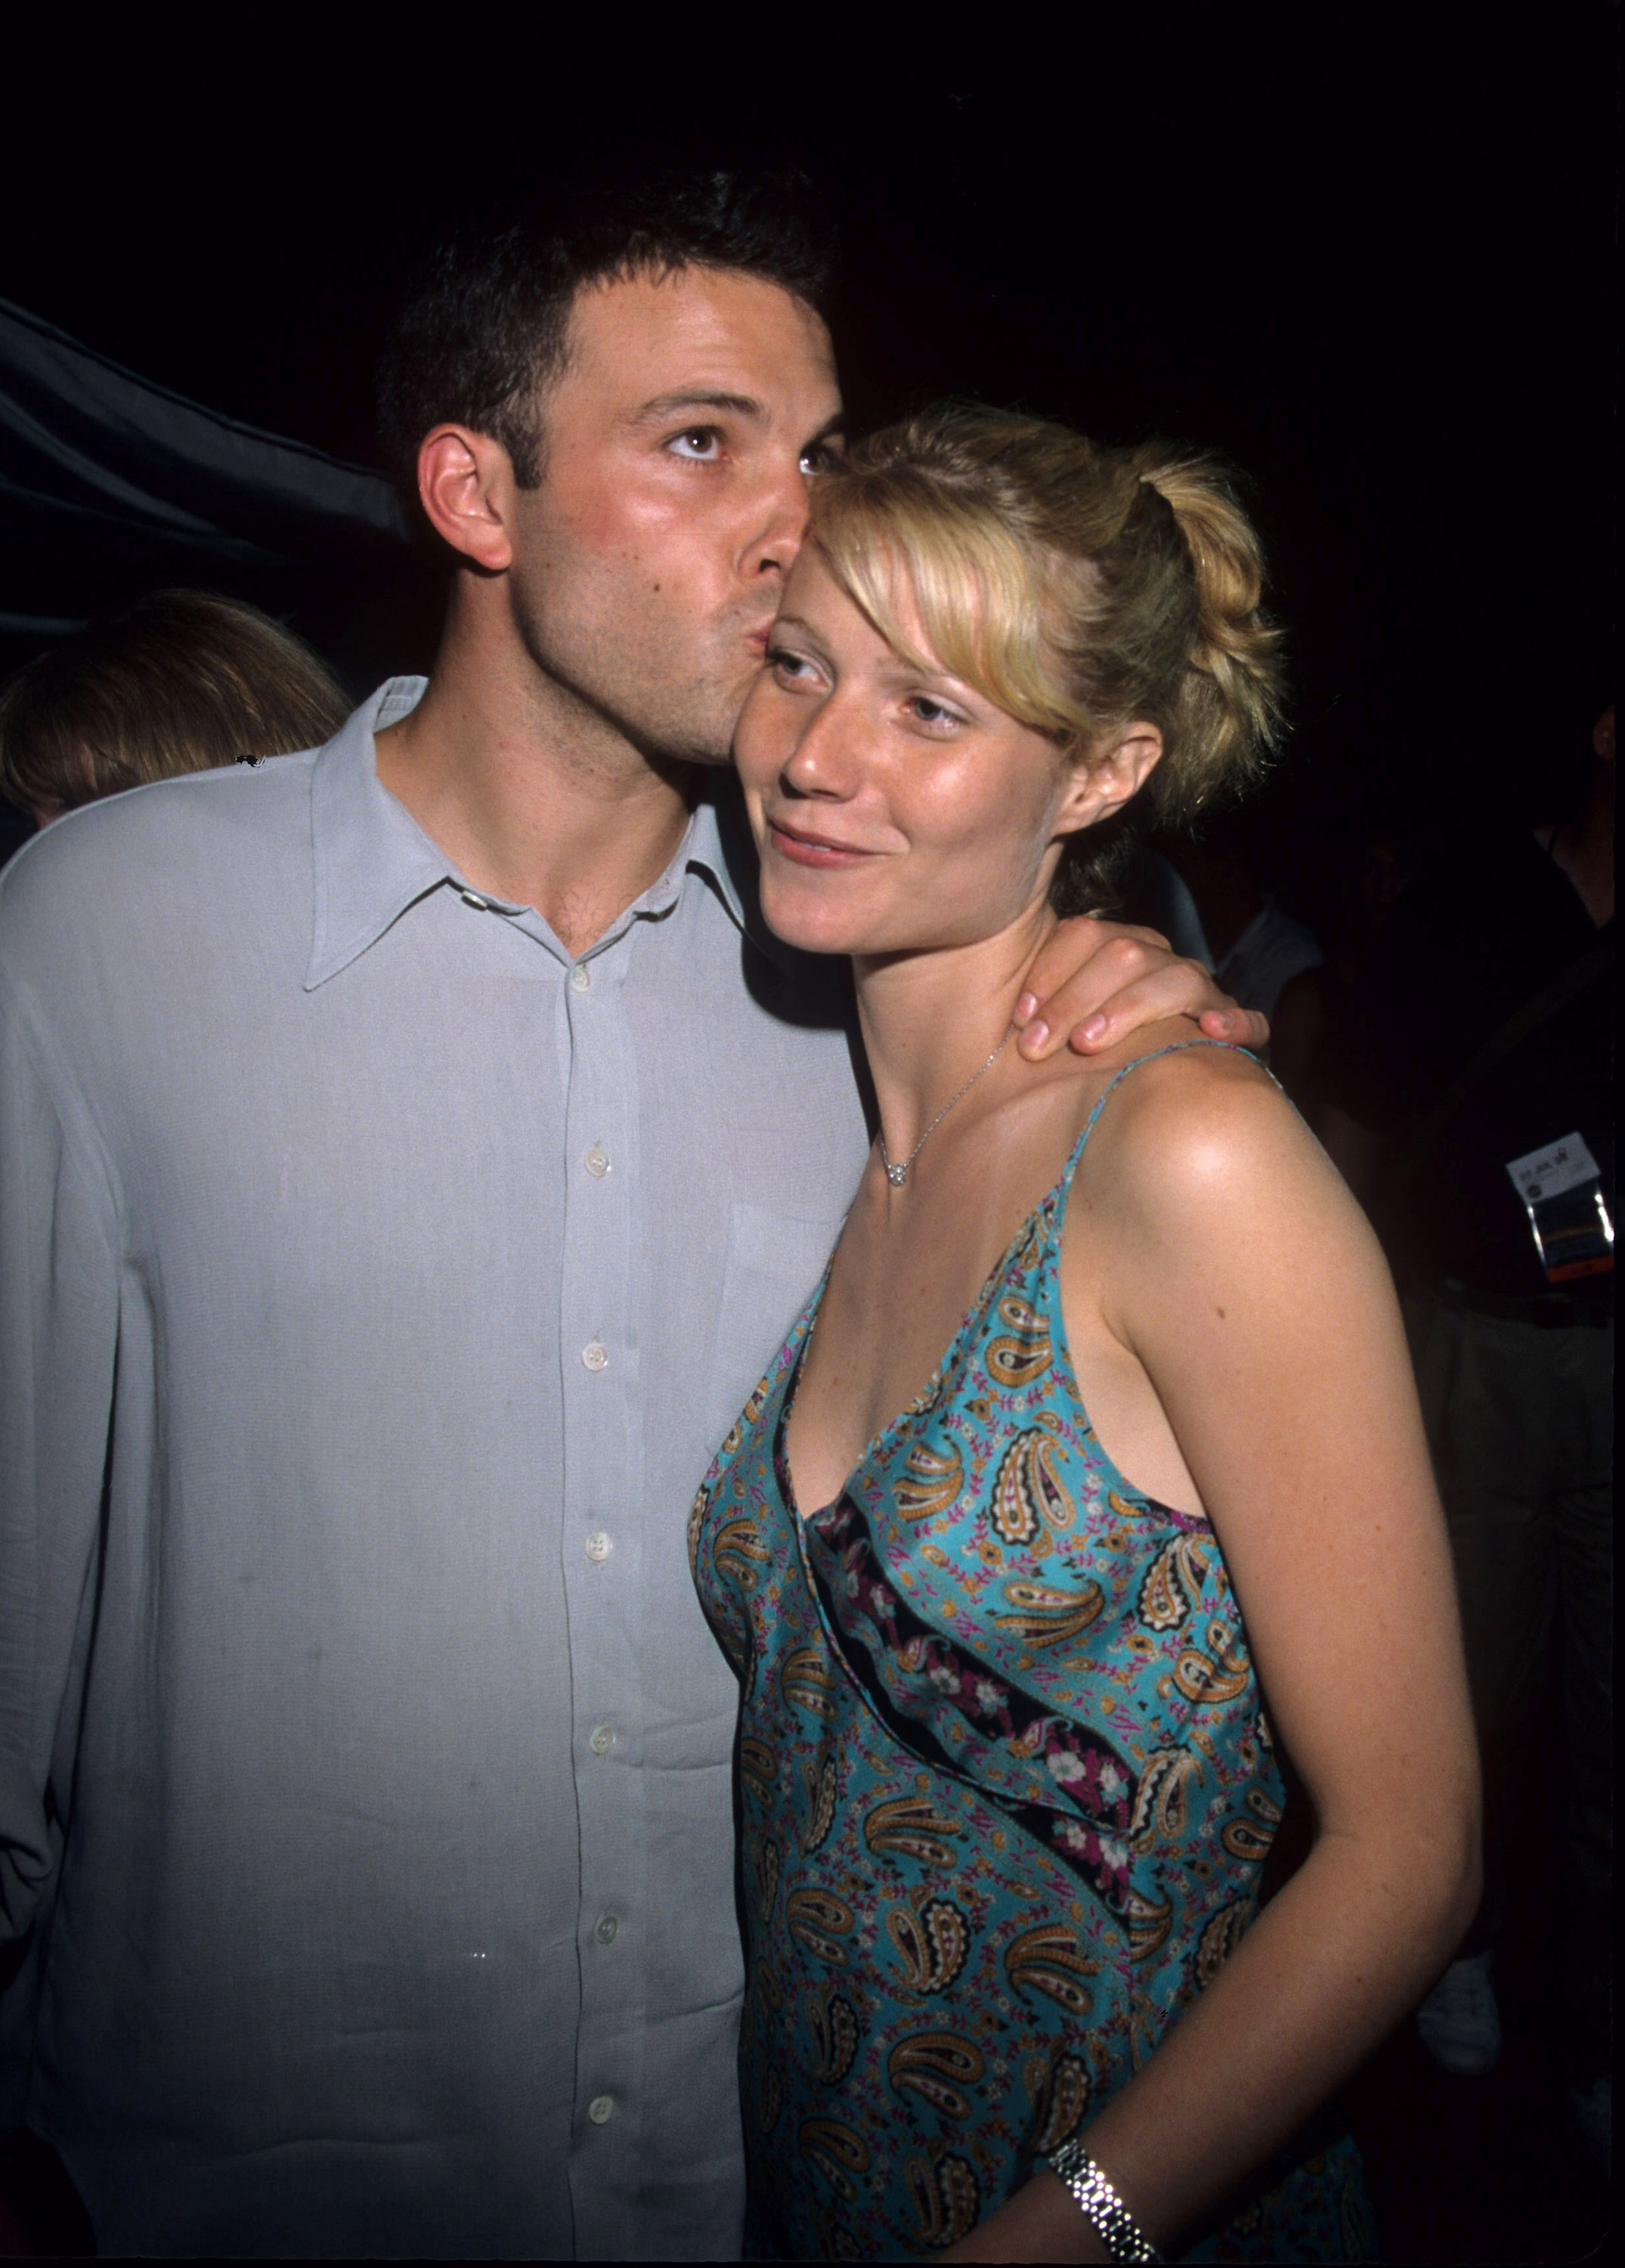 Ben Affleck y Gwyneth Paltrow en el estreno de "Armageddon", 1998 | Foto: Getty Images